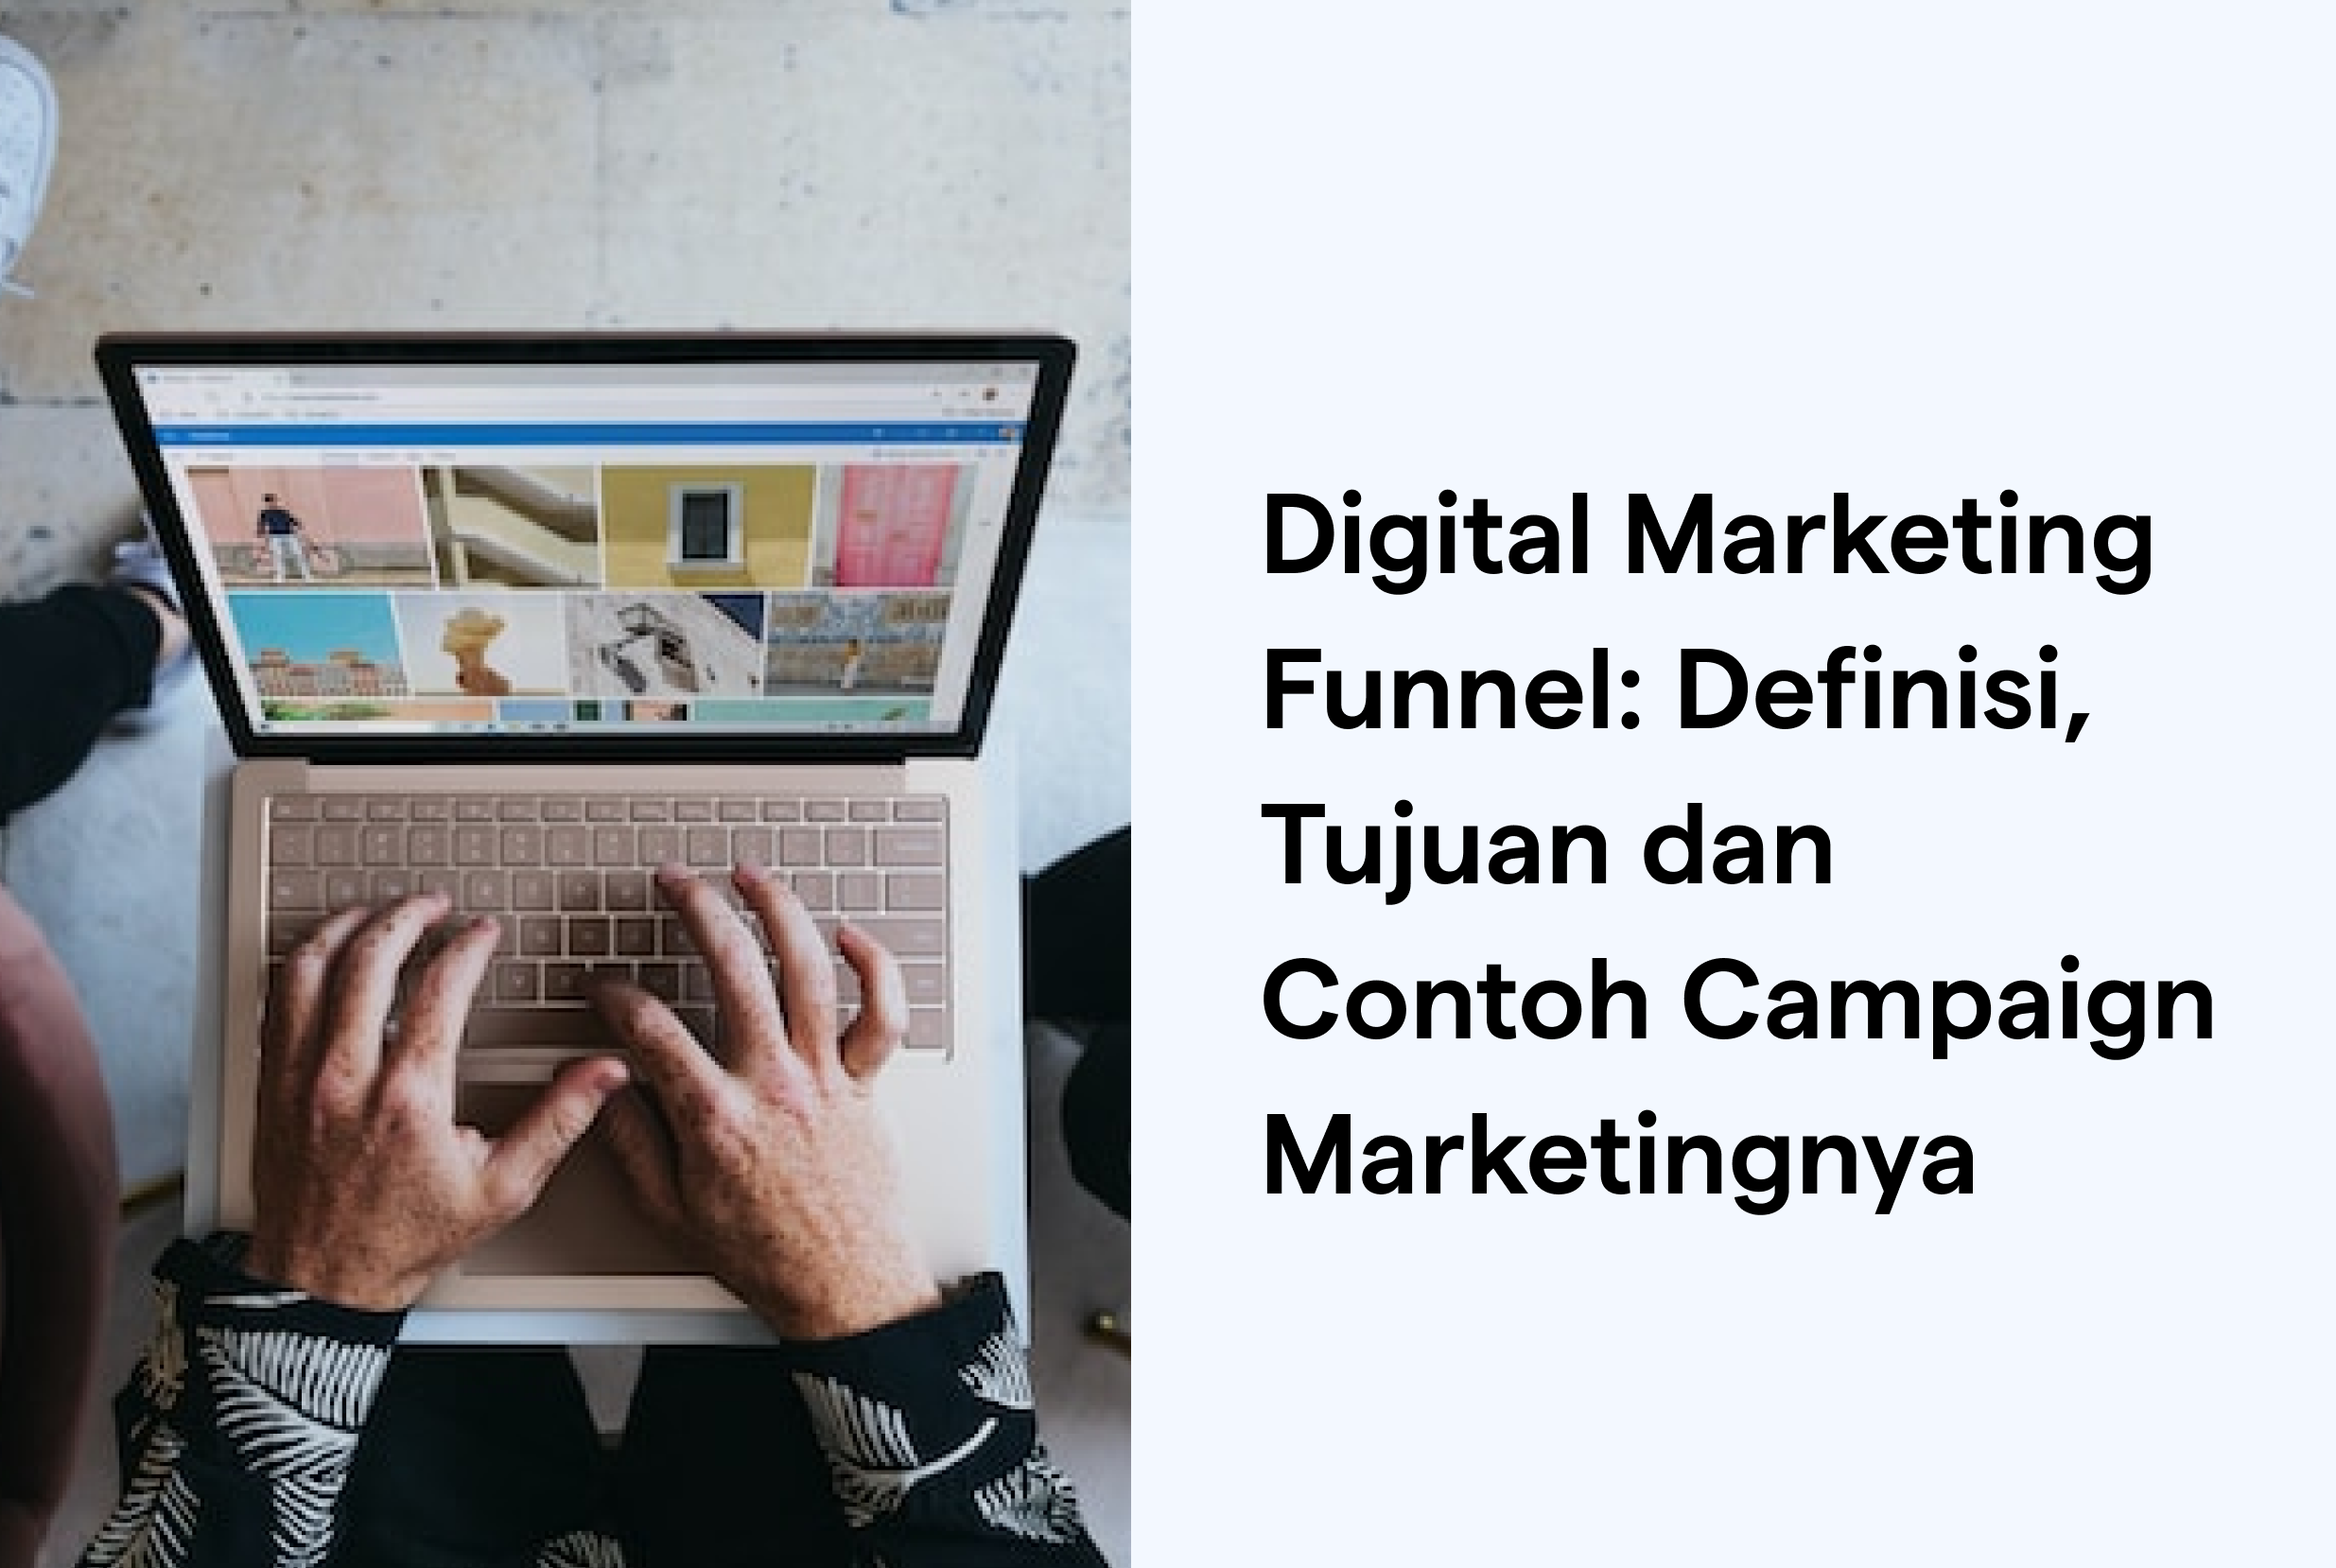 Definisi Digital marketing Funnel dan Contoh Campaign Sesuai dengan Digital Marketing Funnel